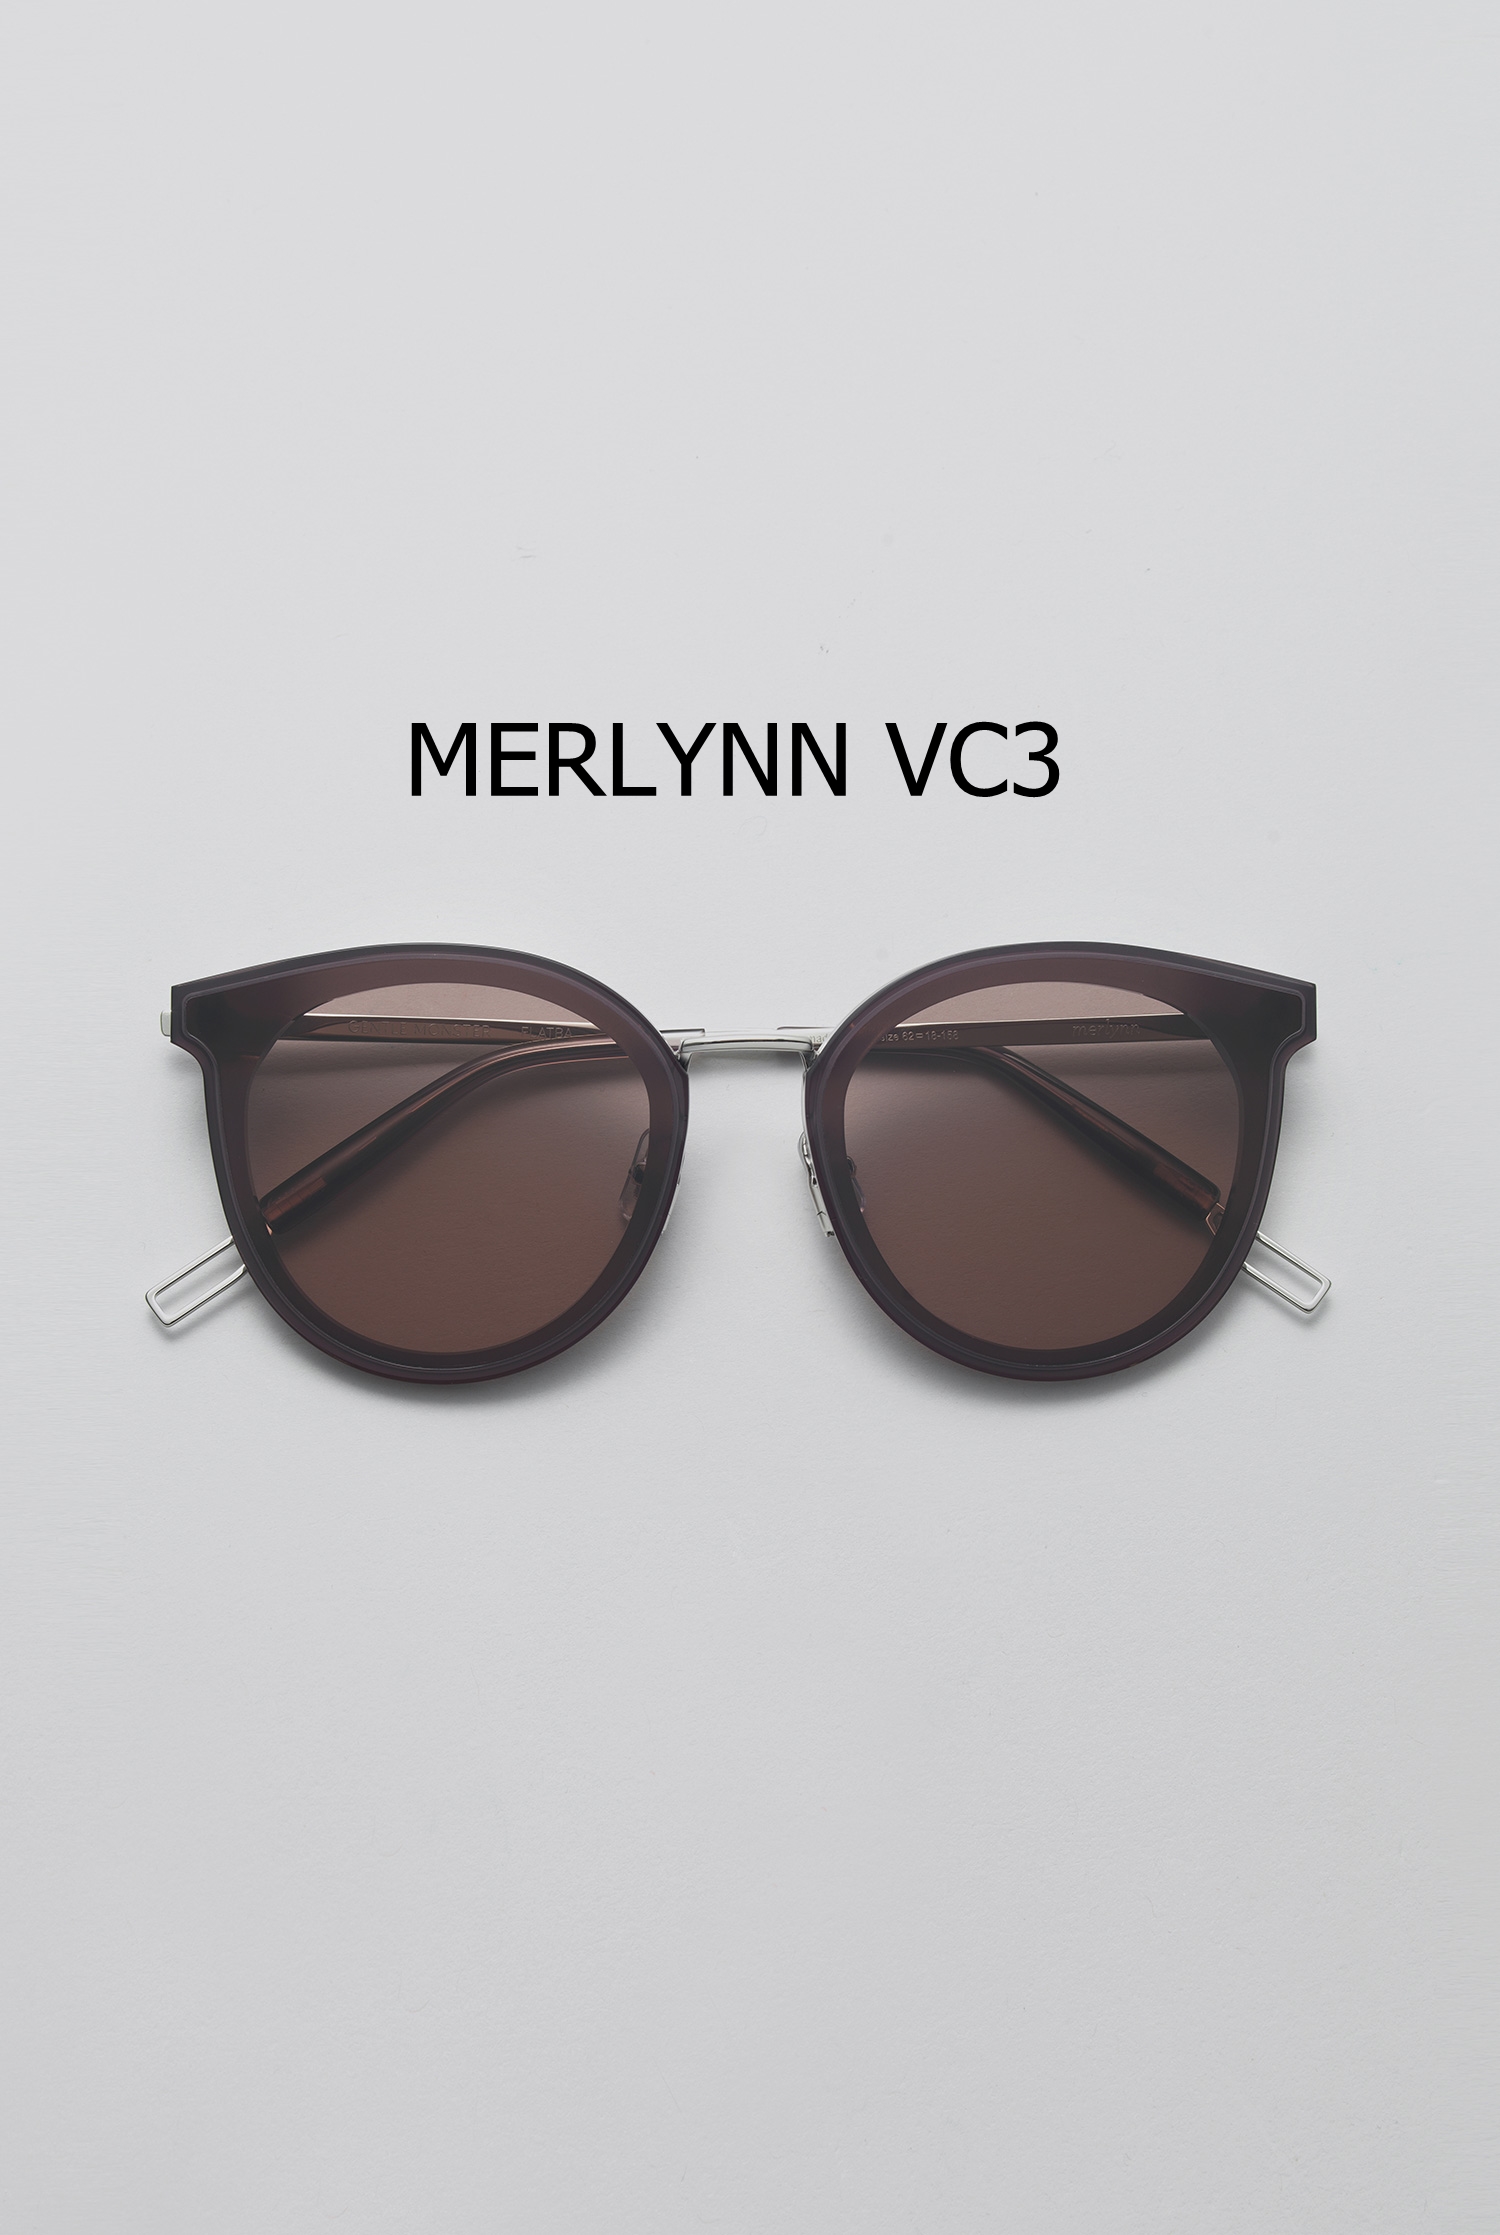 MERLYNN VC3